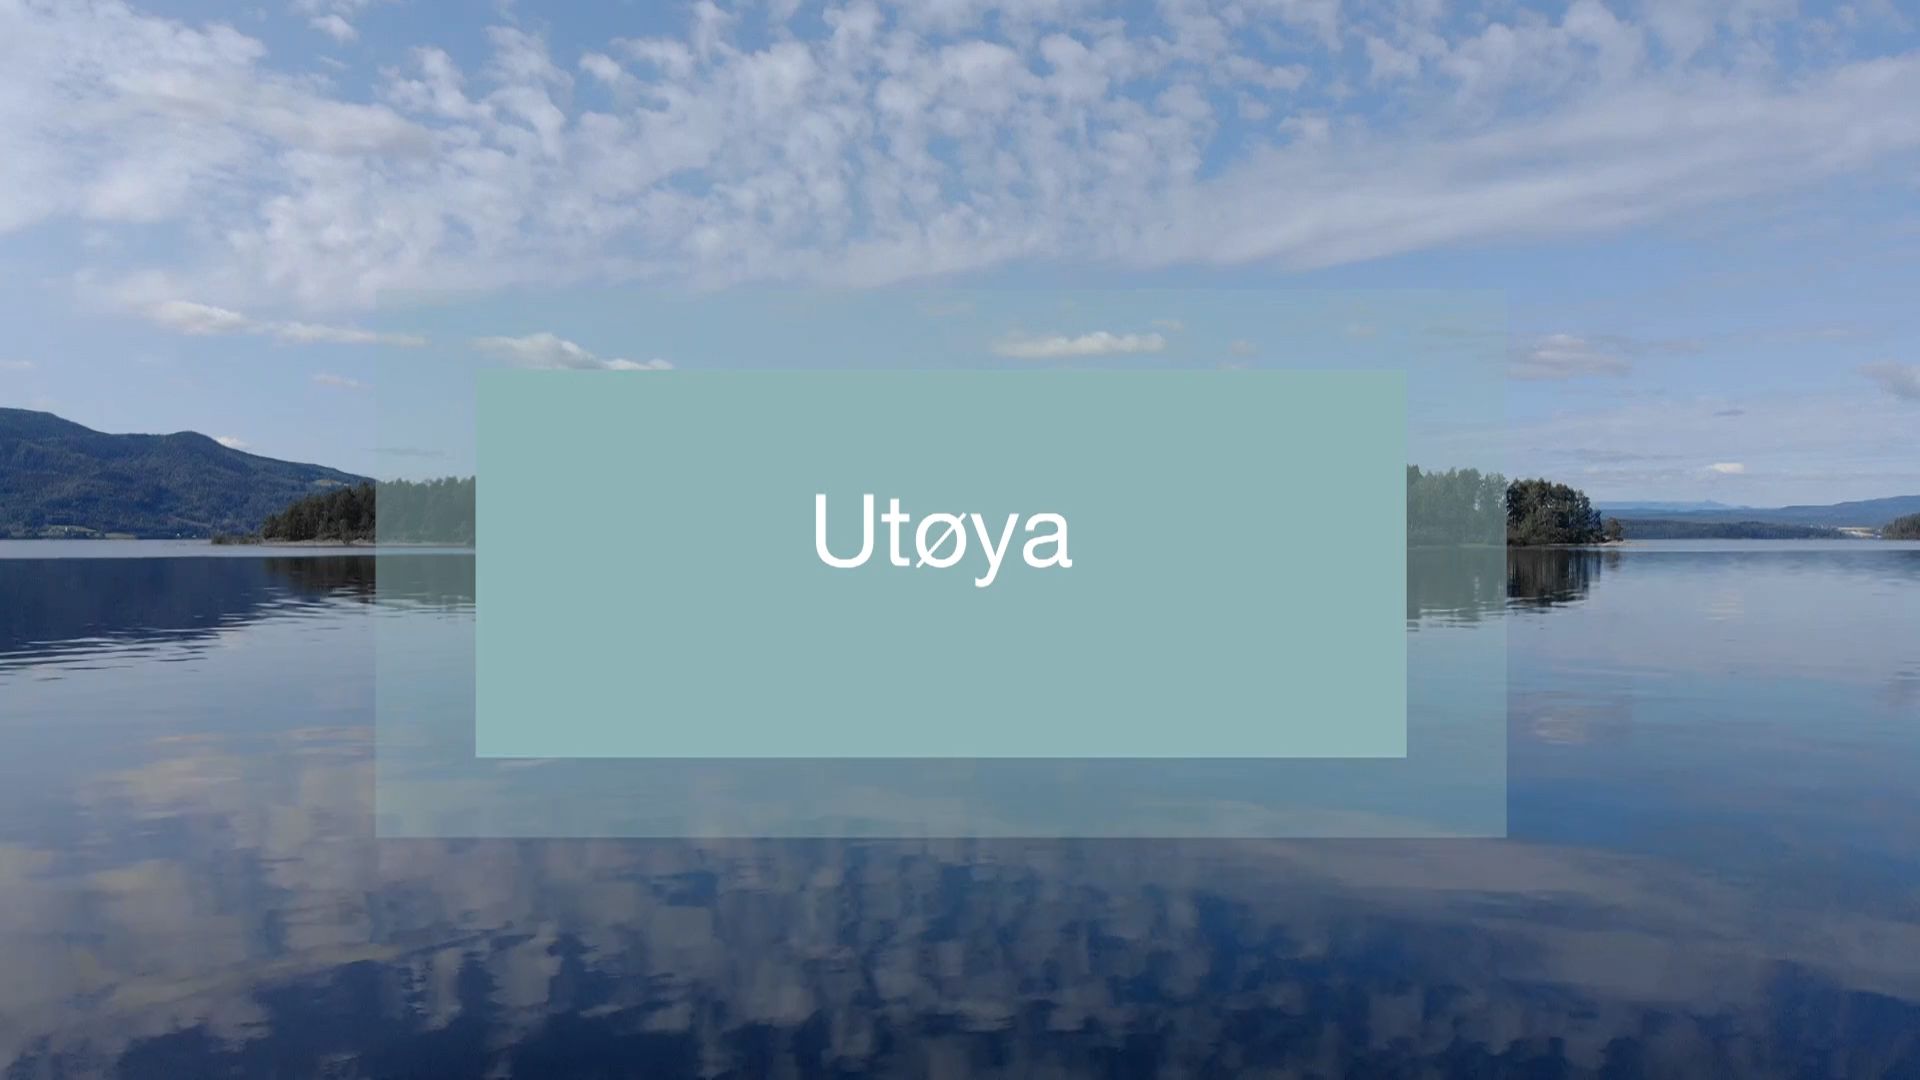 Foto av en øy, med en blå plakat over, der man leser "Utøya". 